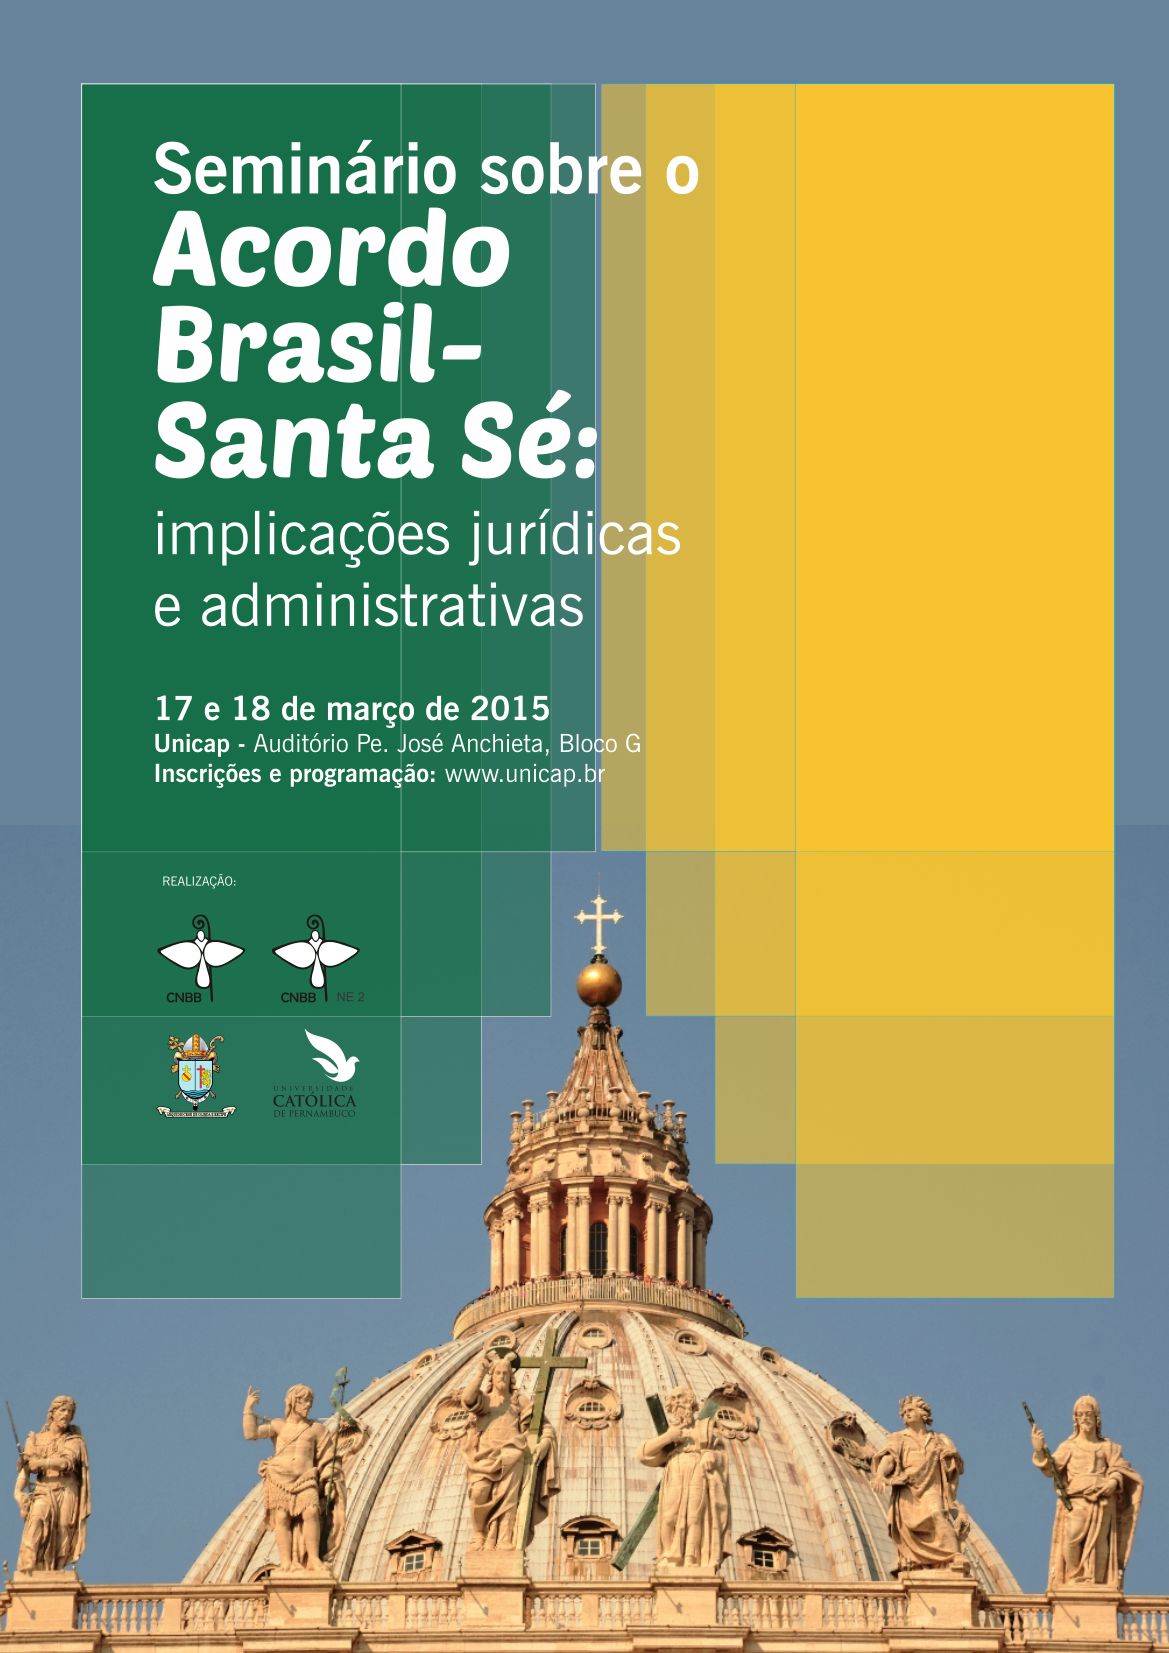 Seminário Acordo Brasil-Santa Sé: implicações jurídicas e administrativas. Inscrições abertas